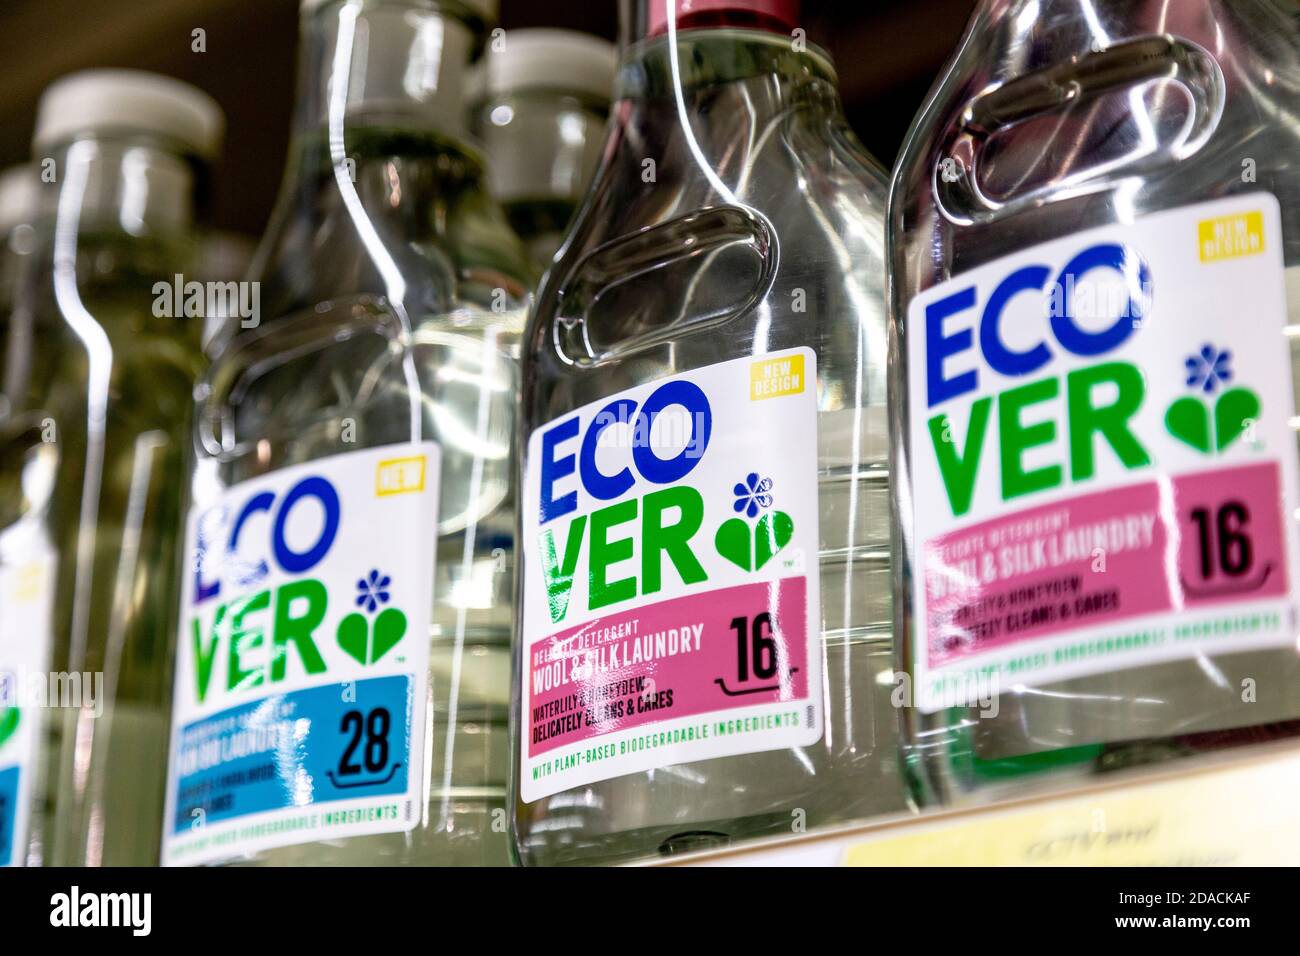 Close-up of ecological laundry detergent Ecover on supermarket shelf, London, UK Stock Photo